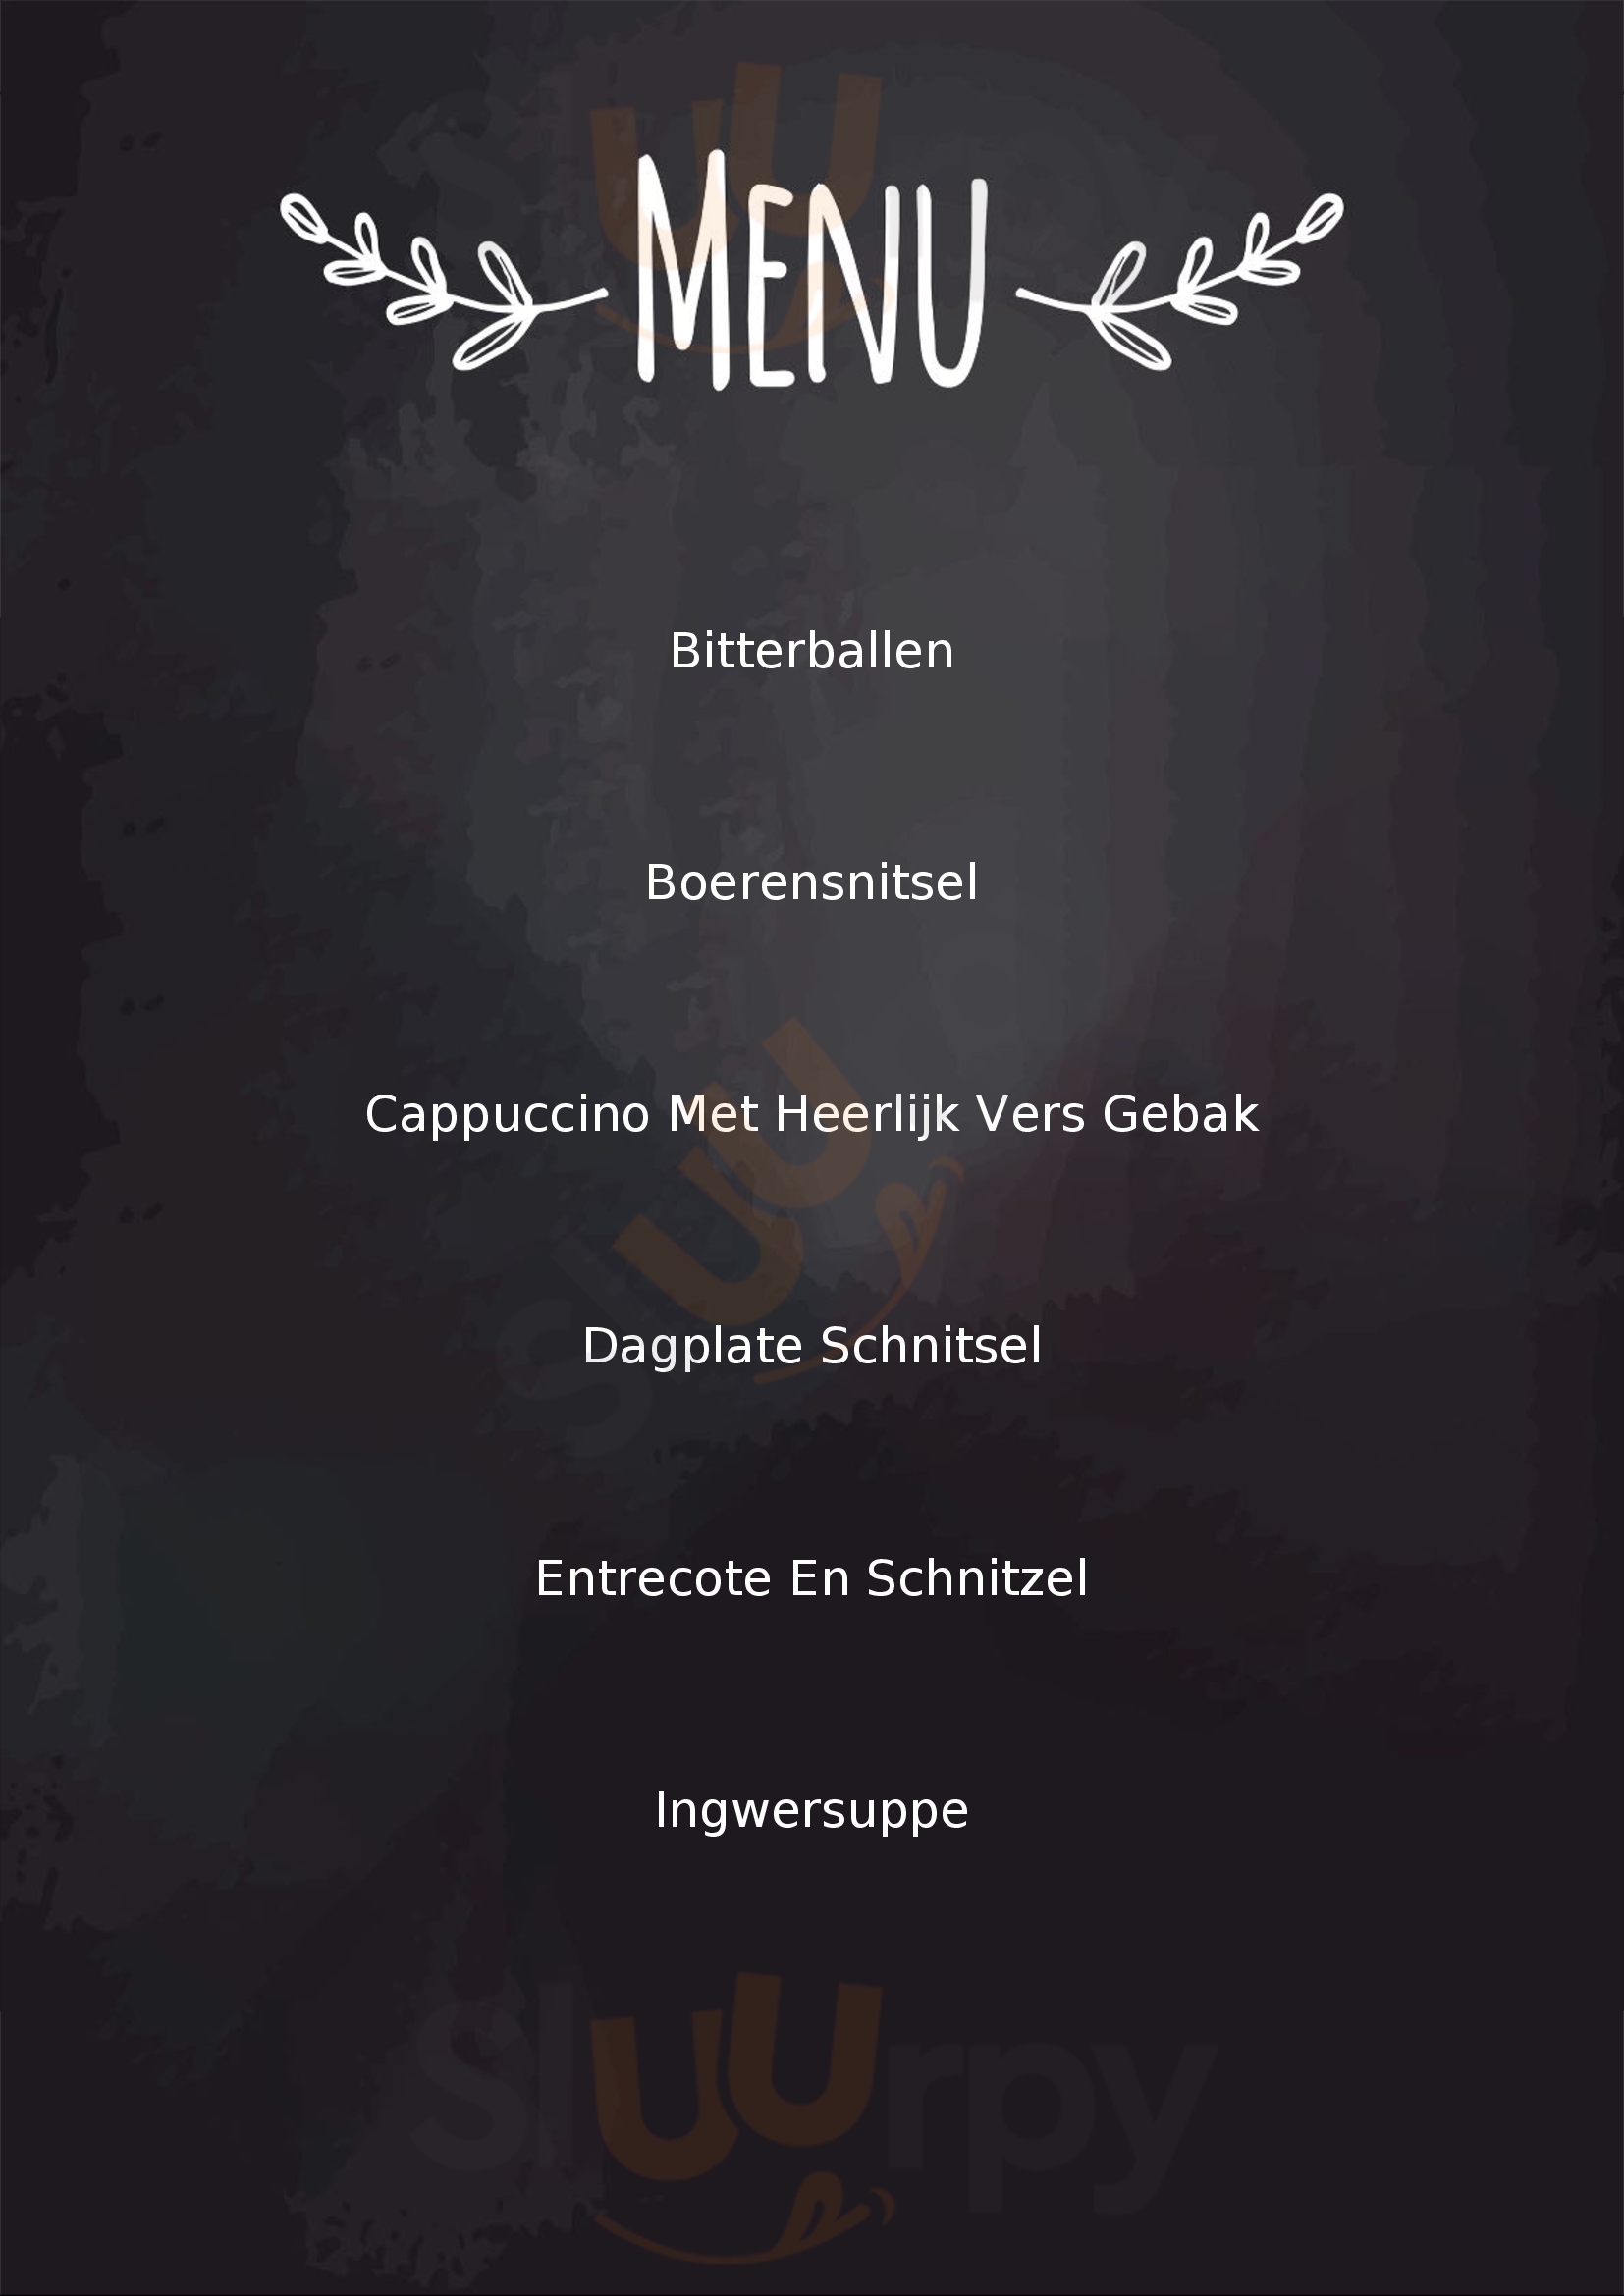 Brasserie De Cuyper Heerenveen Menu - 1